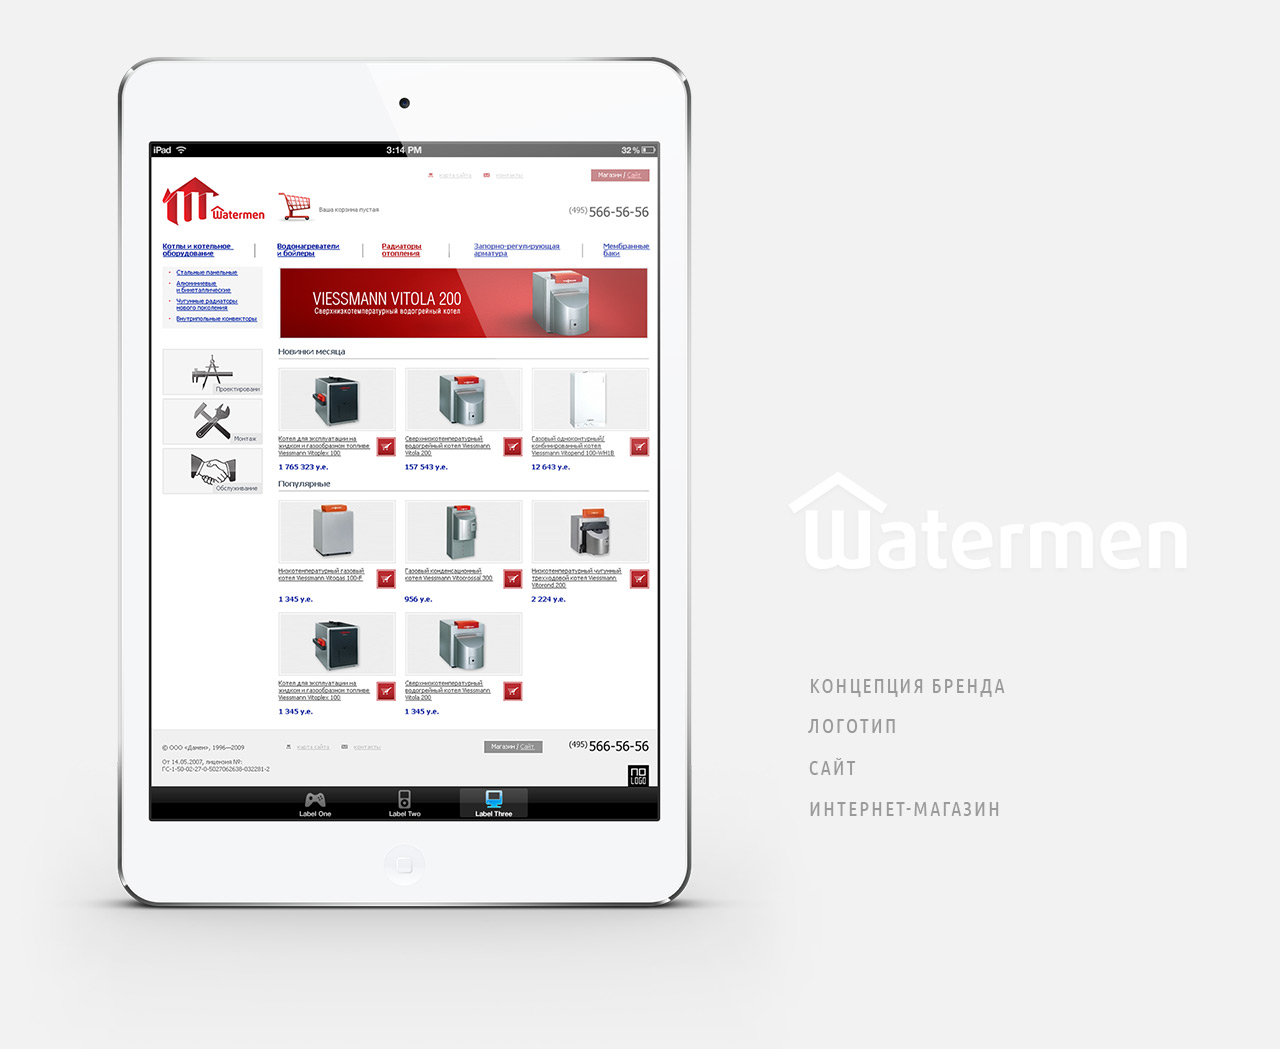 Watermen
Фирменный стиль / Аналитика / Дизайн / Фронтенд-программирование / Бэкенд-программирование
© No Logo Studio